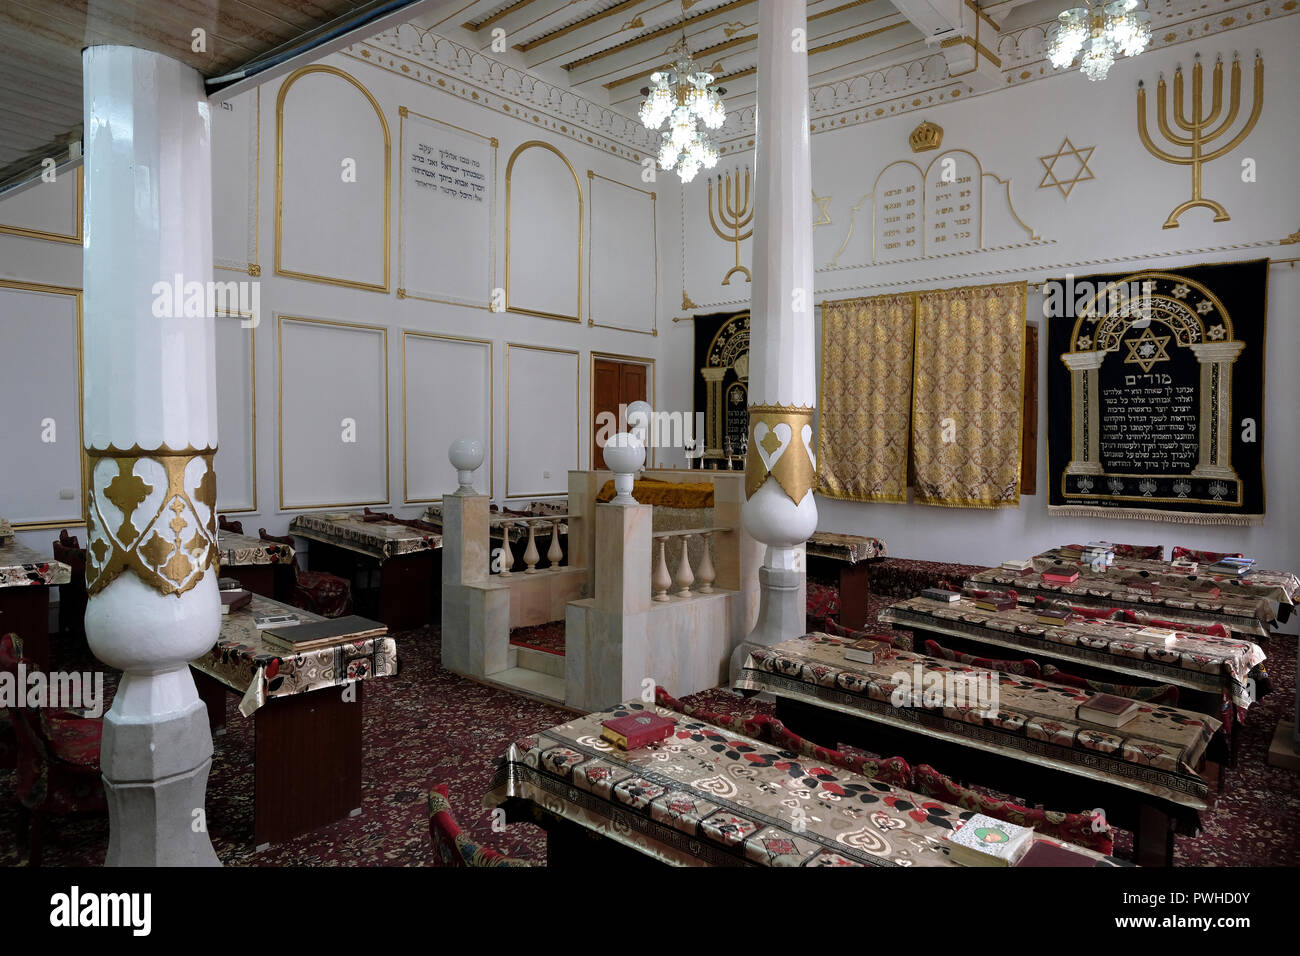 Innenraum der Ateret Hiskia jüdische Synagoge, die stammt aus dem 16. Jahrhundert in der Stadt Samarkand, Buchara im 19. und frühen 20. Jahrhundert in Usbekistan. Auswanderung nach Israel und der Westen hat eine rasch schwindende Jüdische Gemeinschaft in Buchara Links, und nur etwa 500 Juden in der Stadt bleiben. Stockfoto